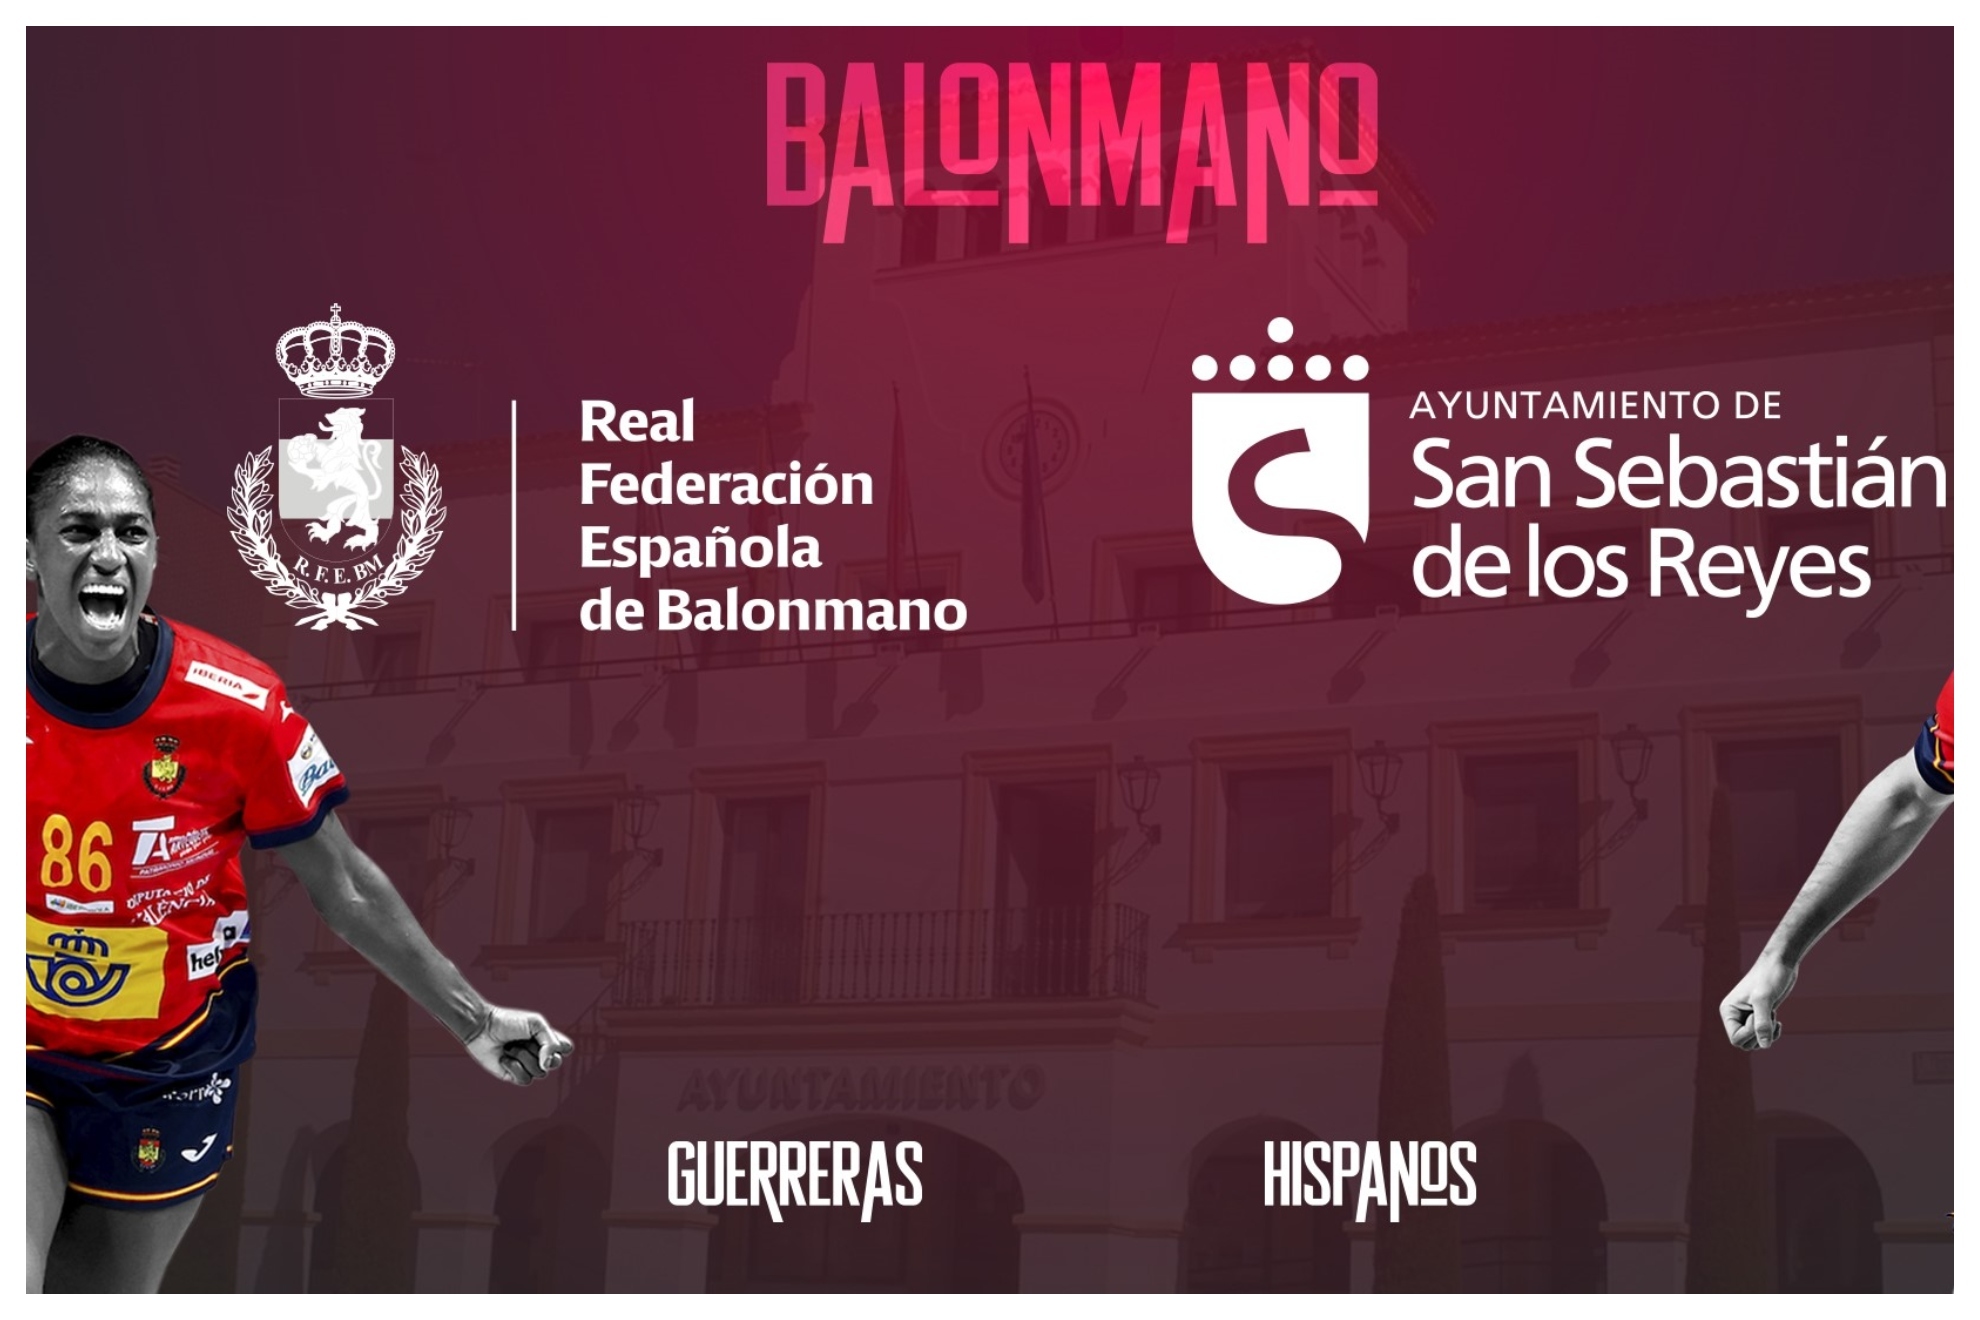 Anuncio de San Sebastián de los Reyes como sede para la Ciudad del Balonmano /